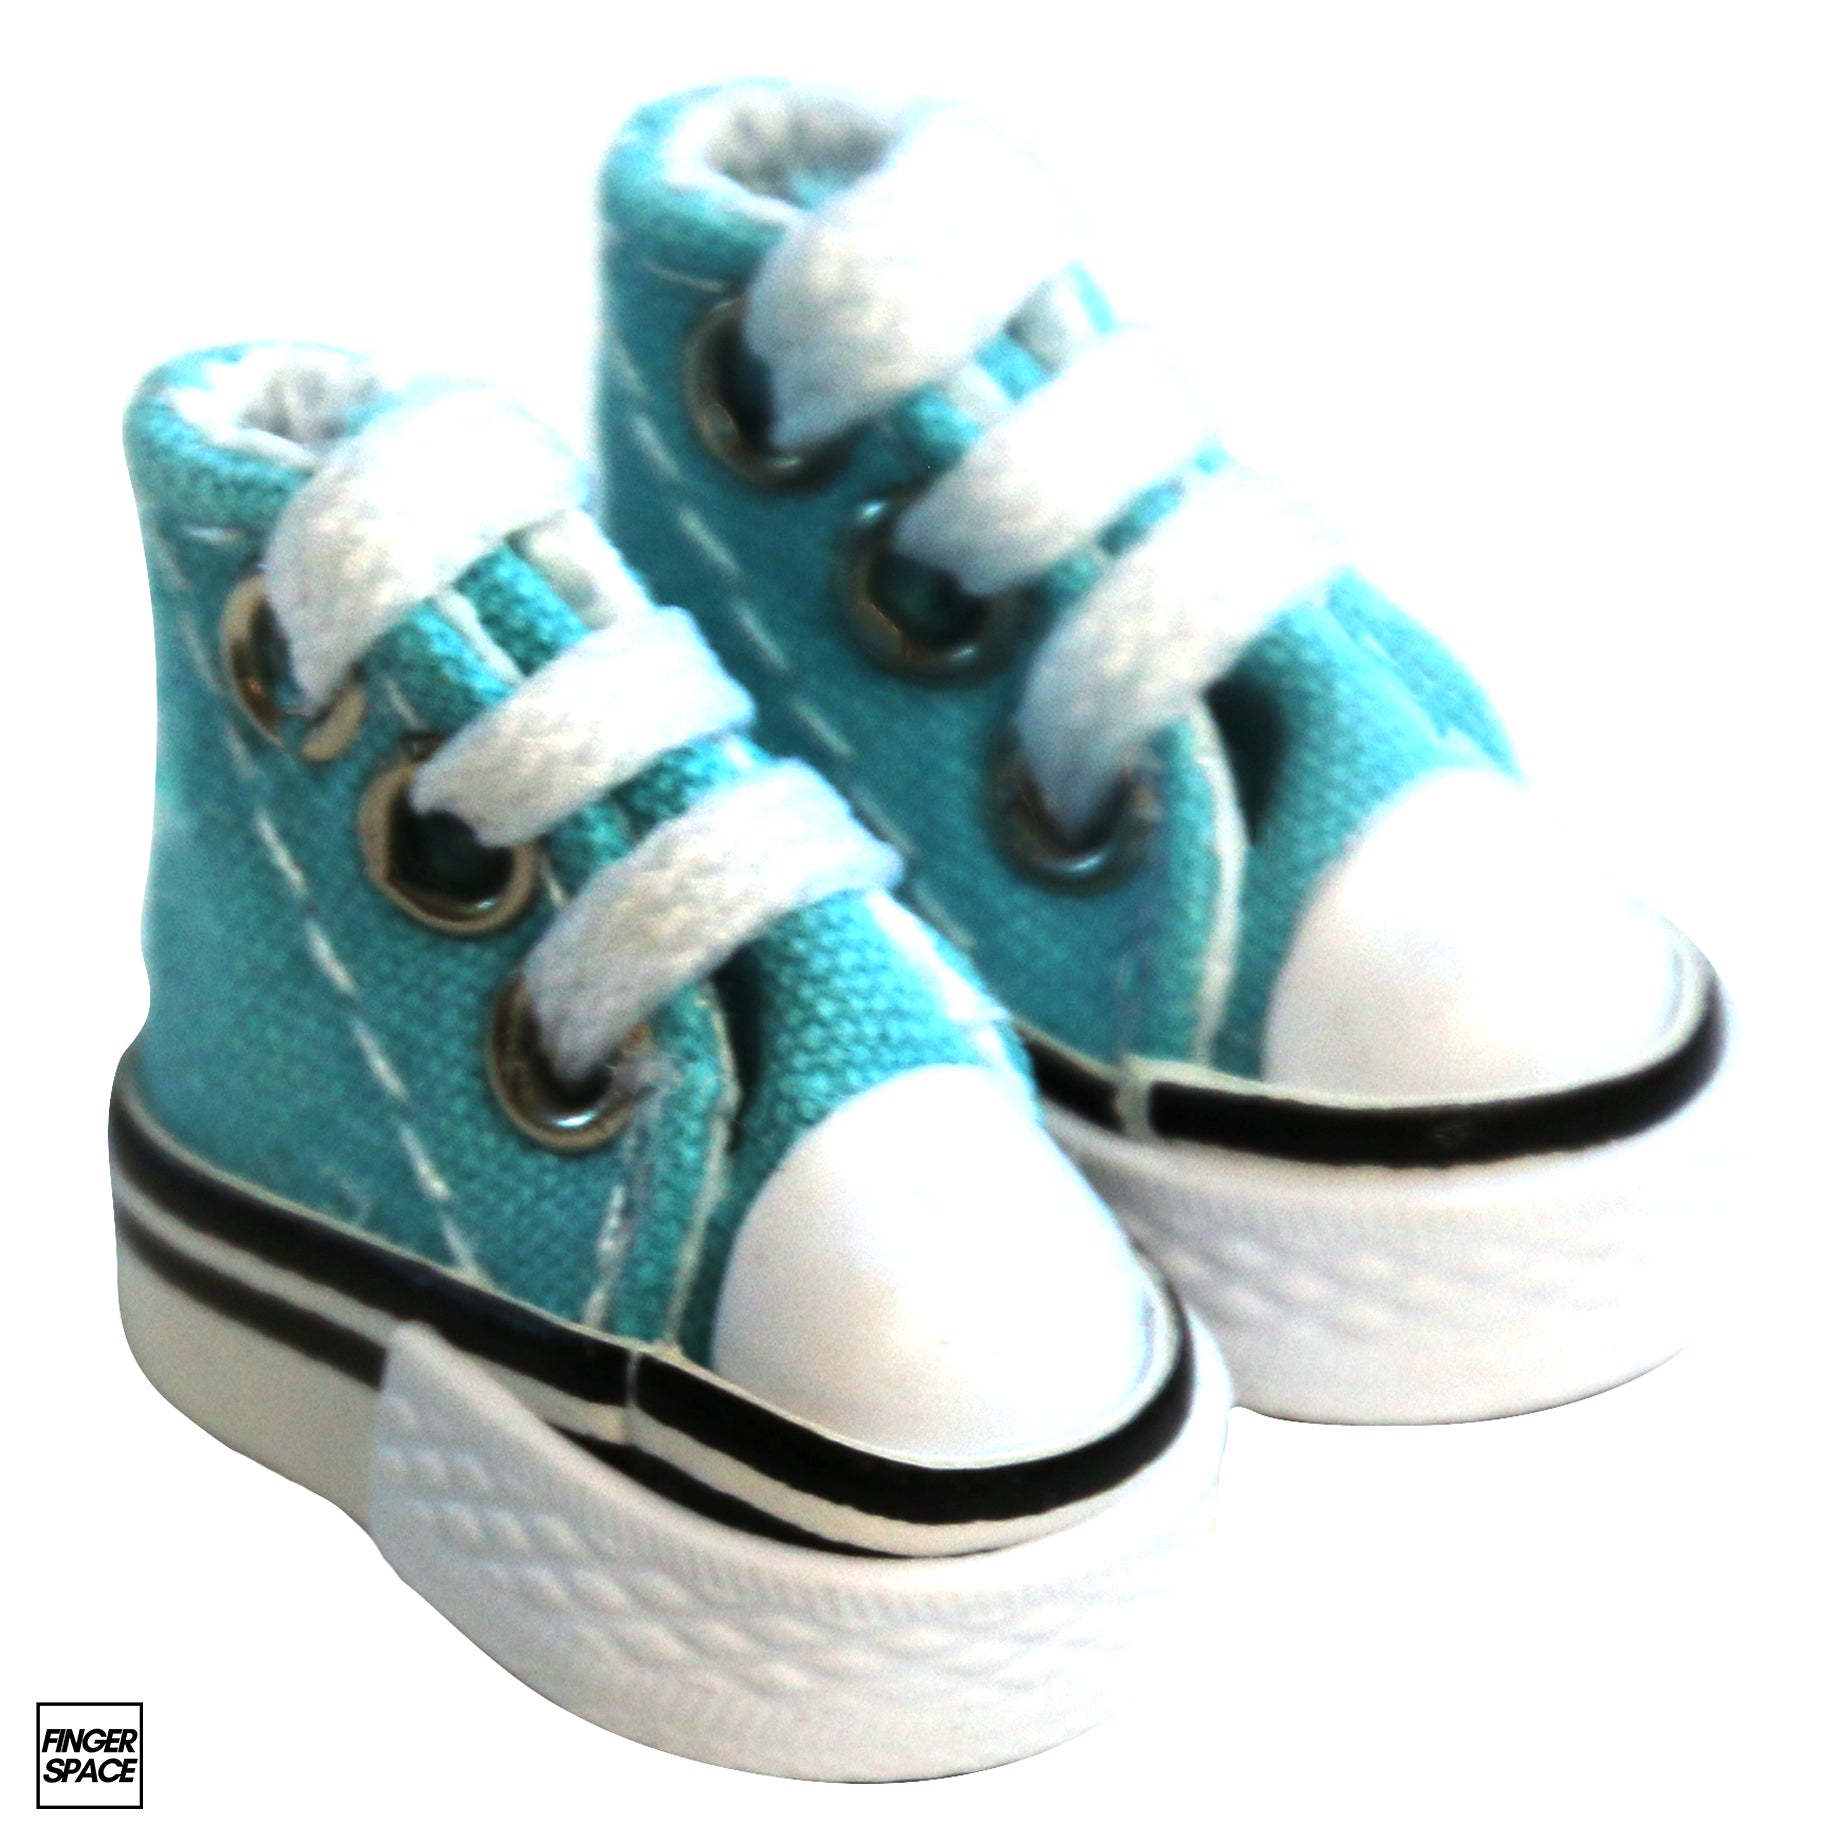 Miniature Finger Shoes - Aqua Blue Edition